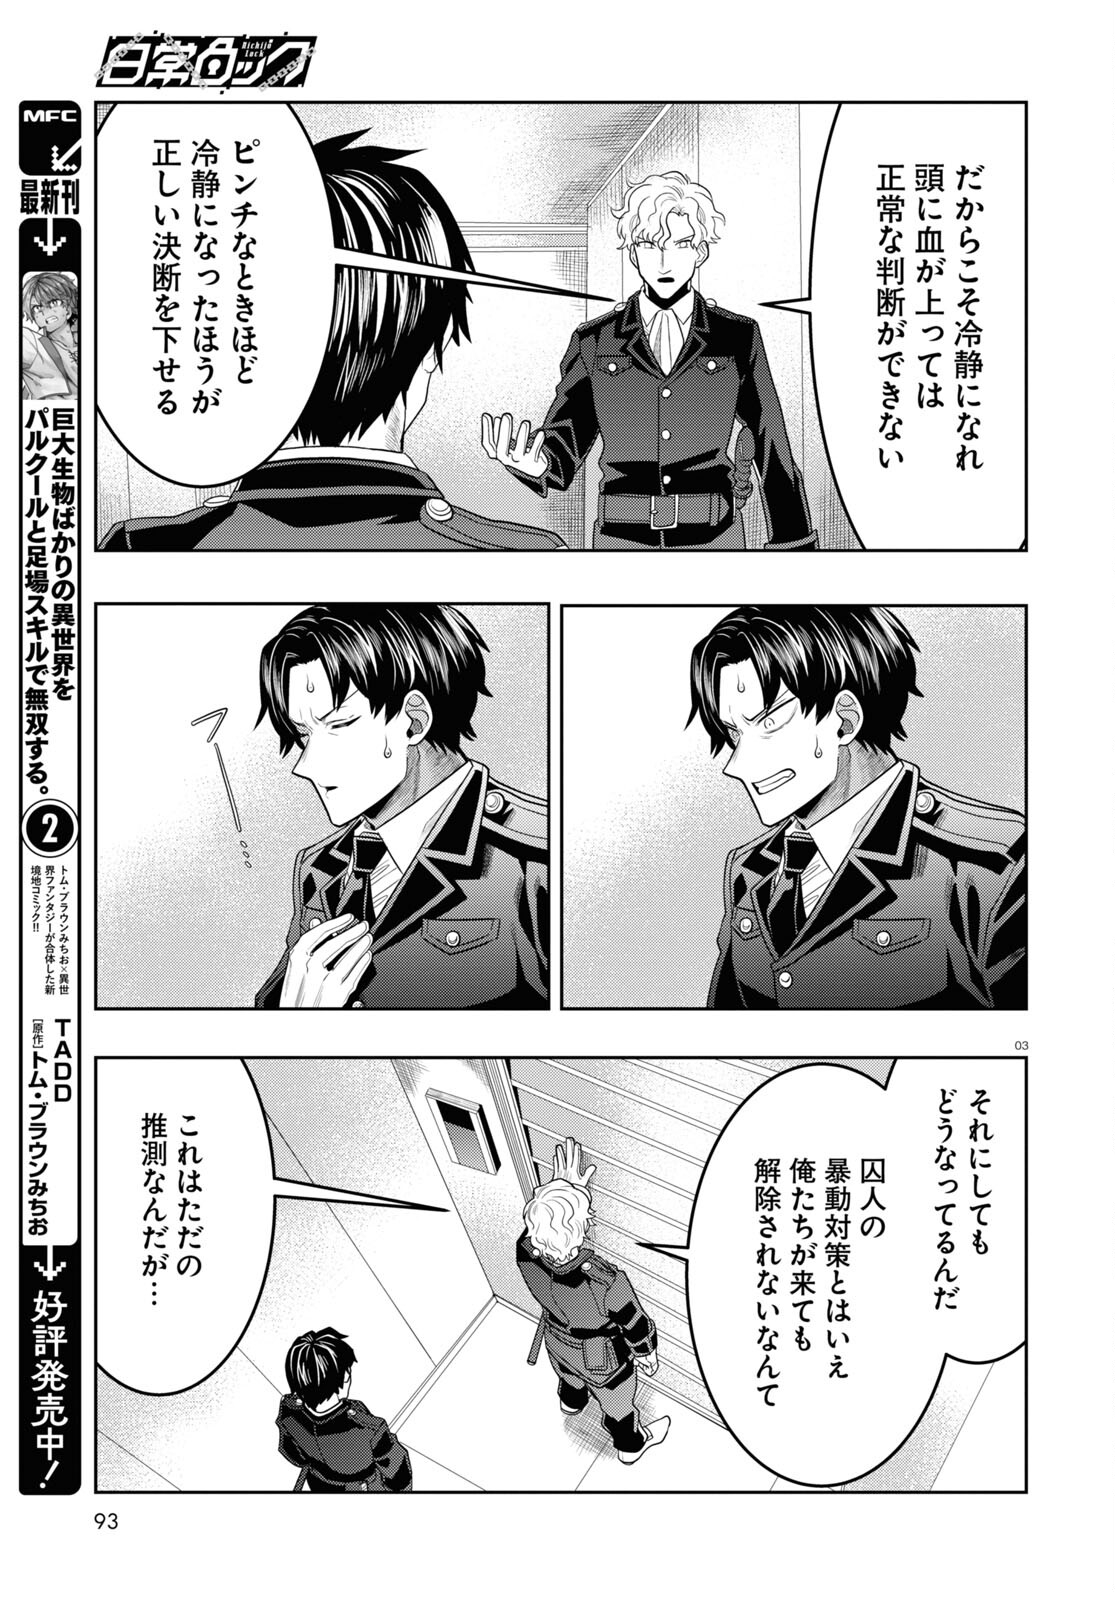 Nichijou Lock - Chapter 32 - Page 3